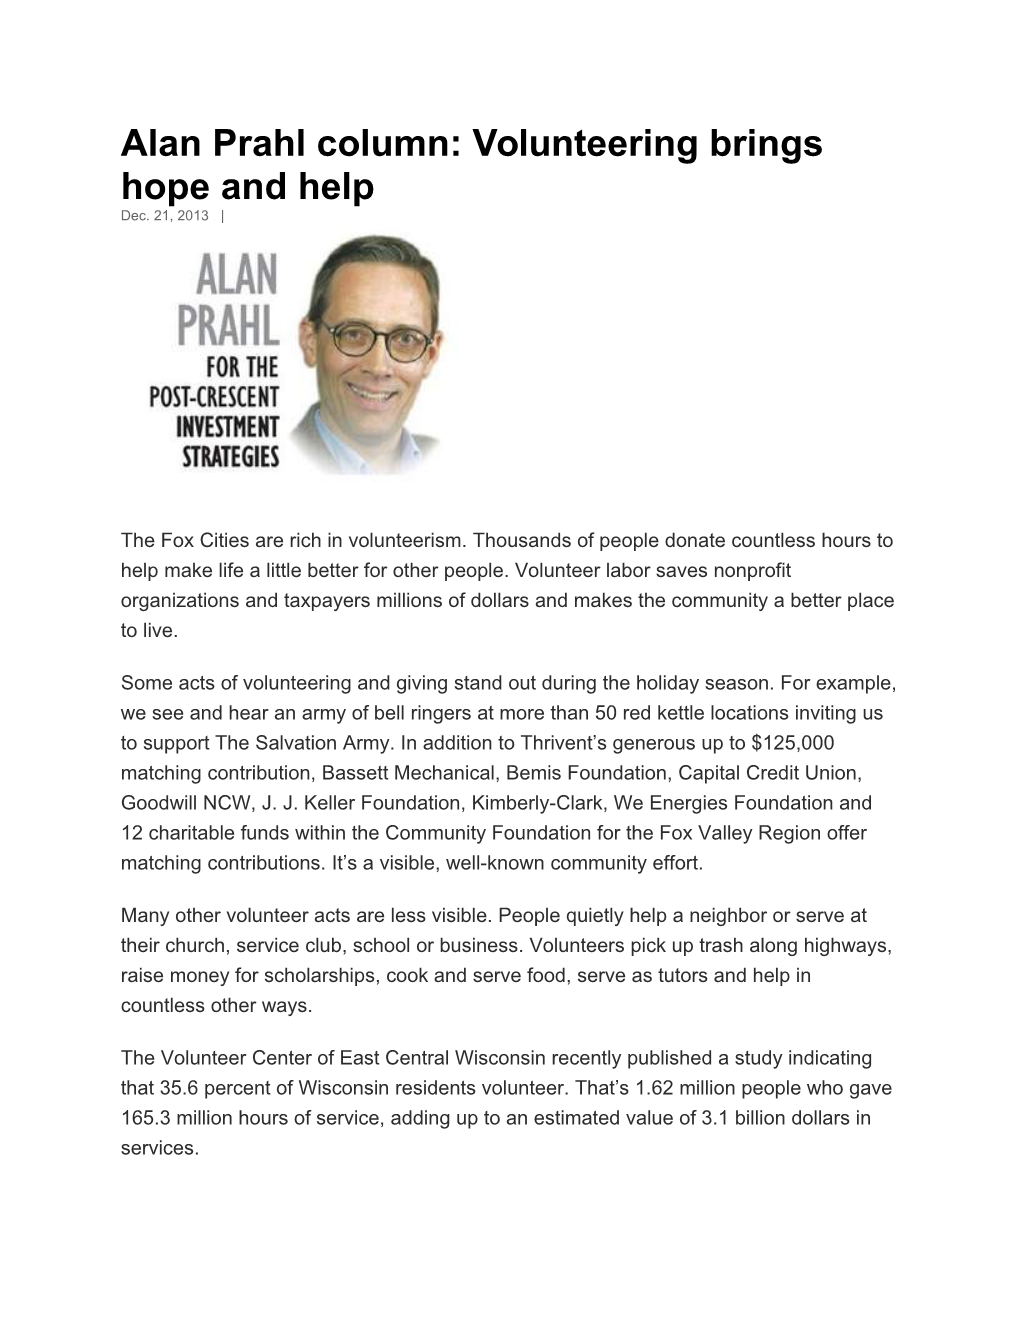 Alan Prahl Column: Volunteering Brings Hope and Help